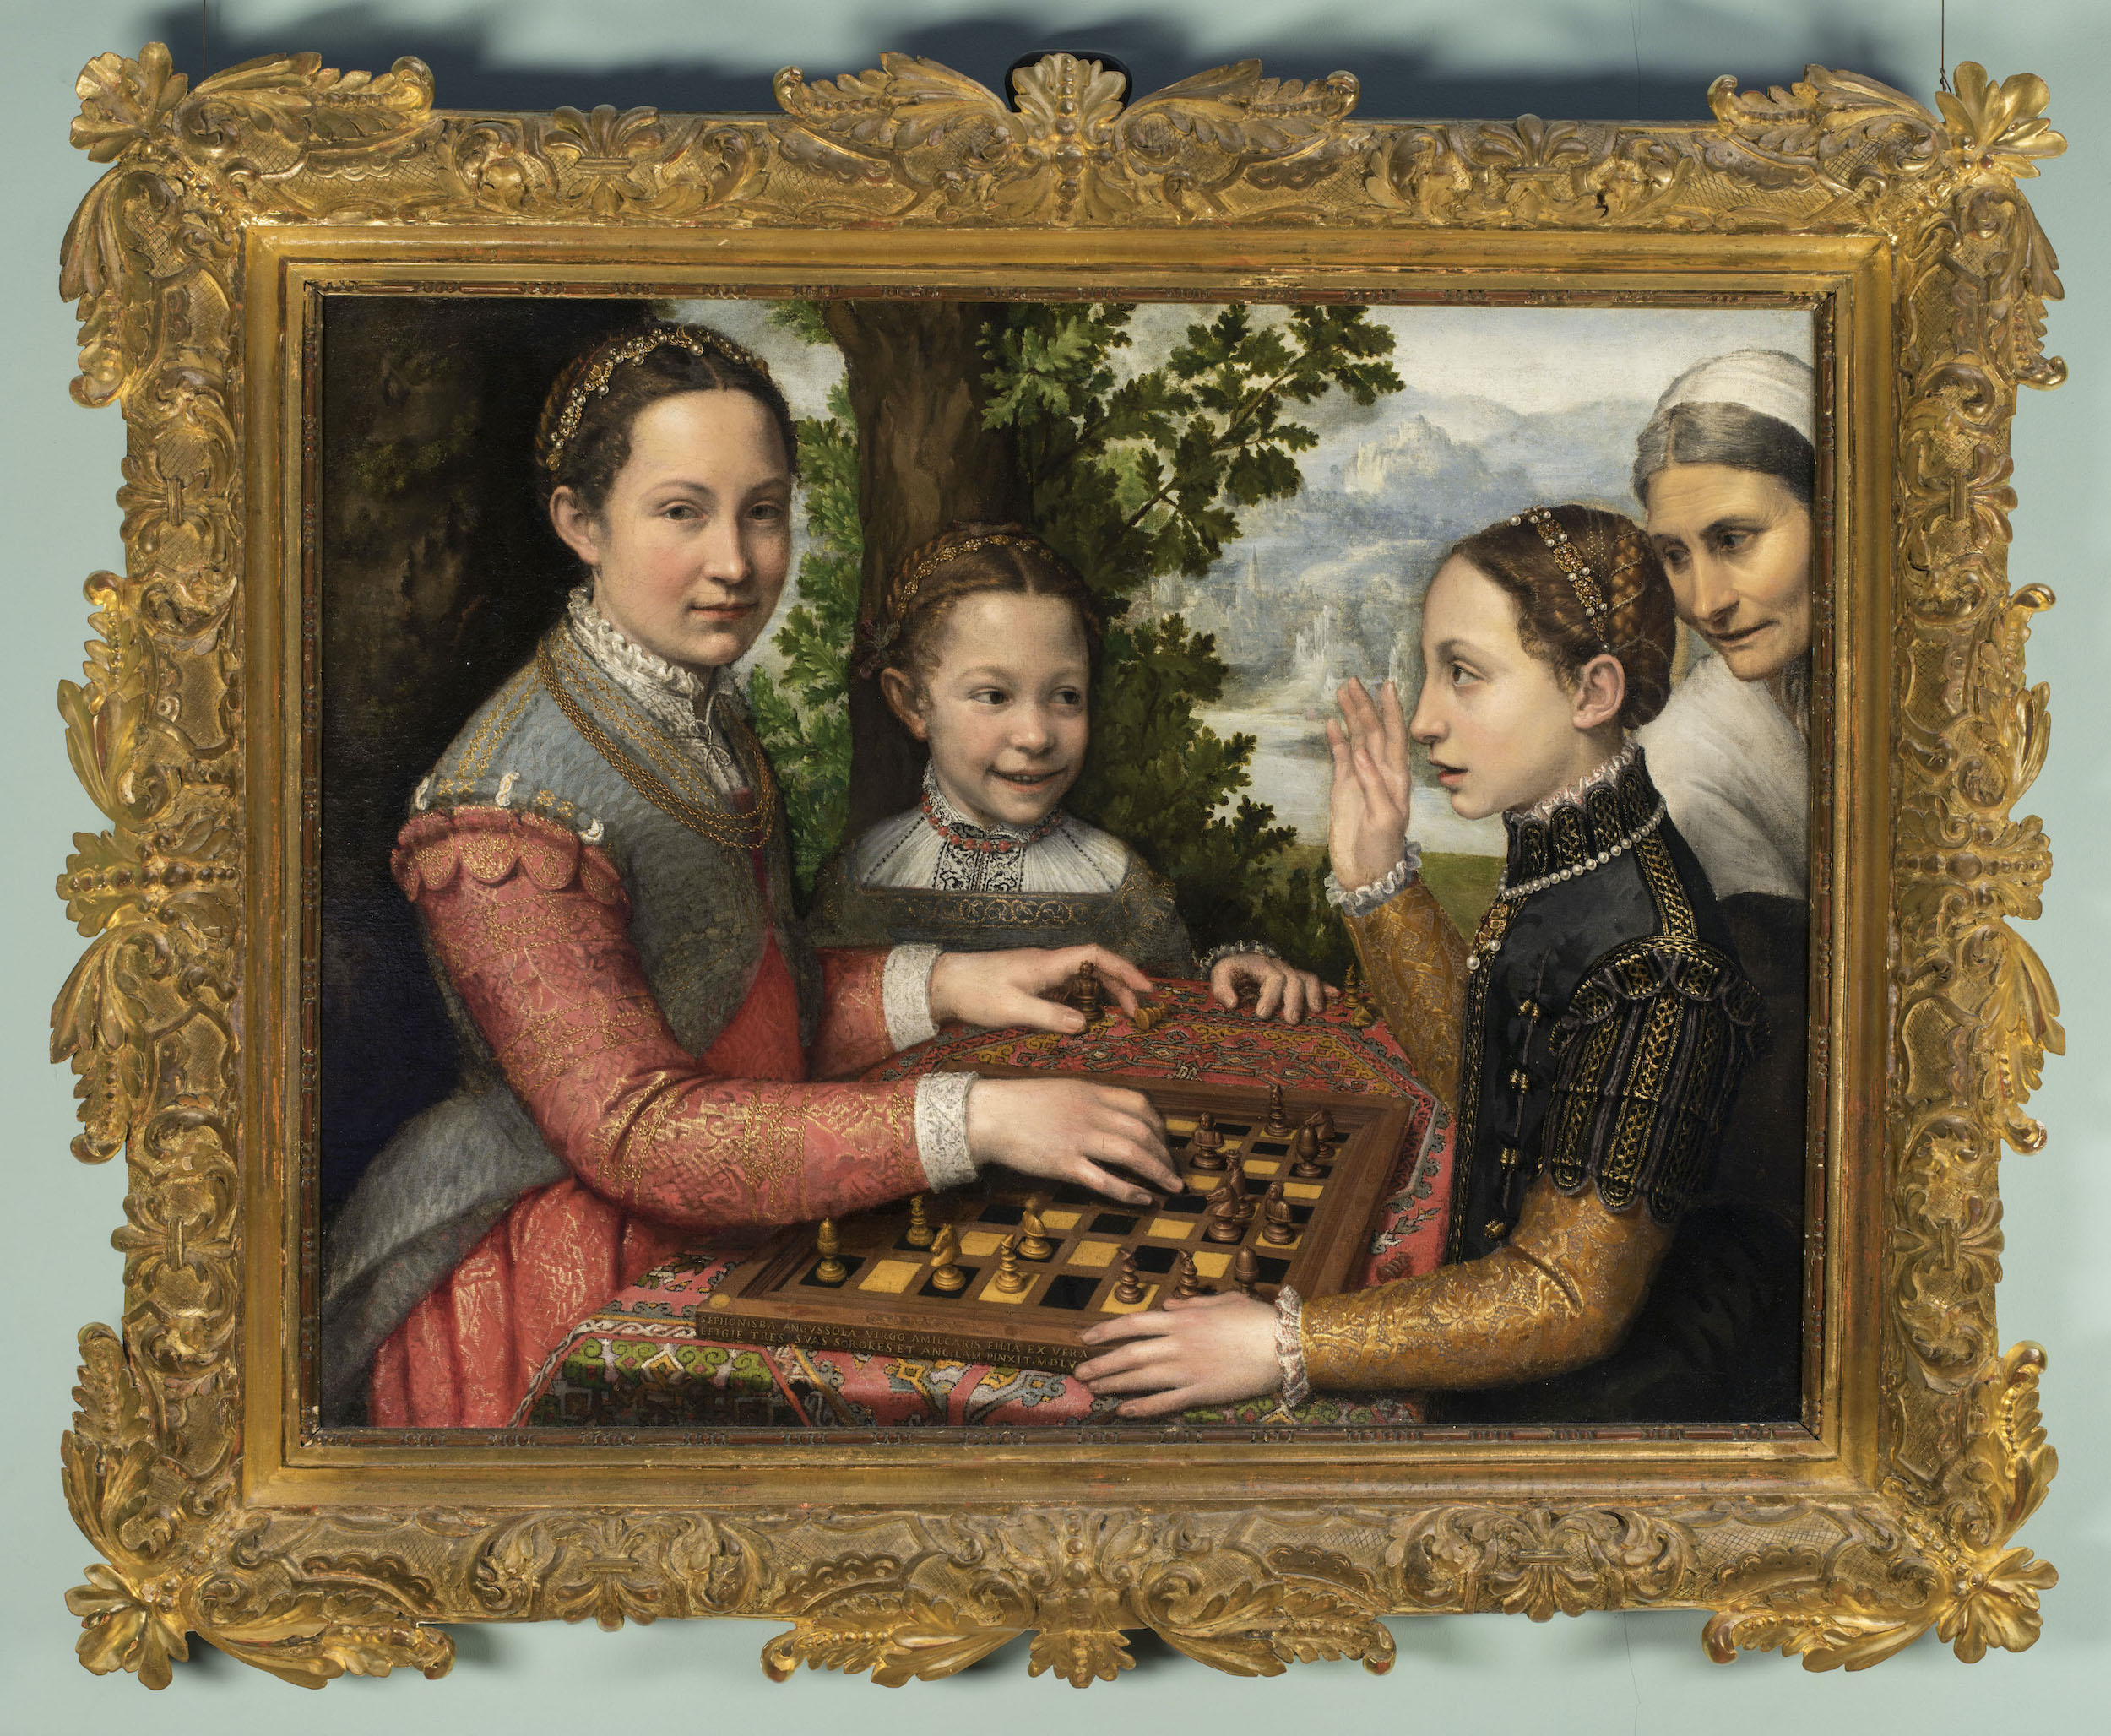 체스 게임(The Chess Game) by Sofonisba Anguissola - 1555 - 72 × 97 cm 